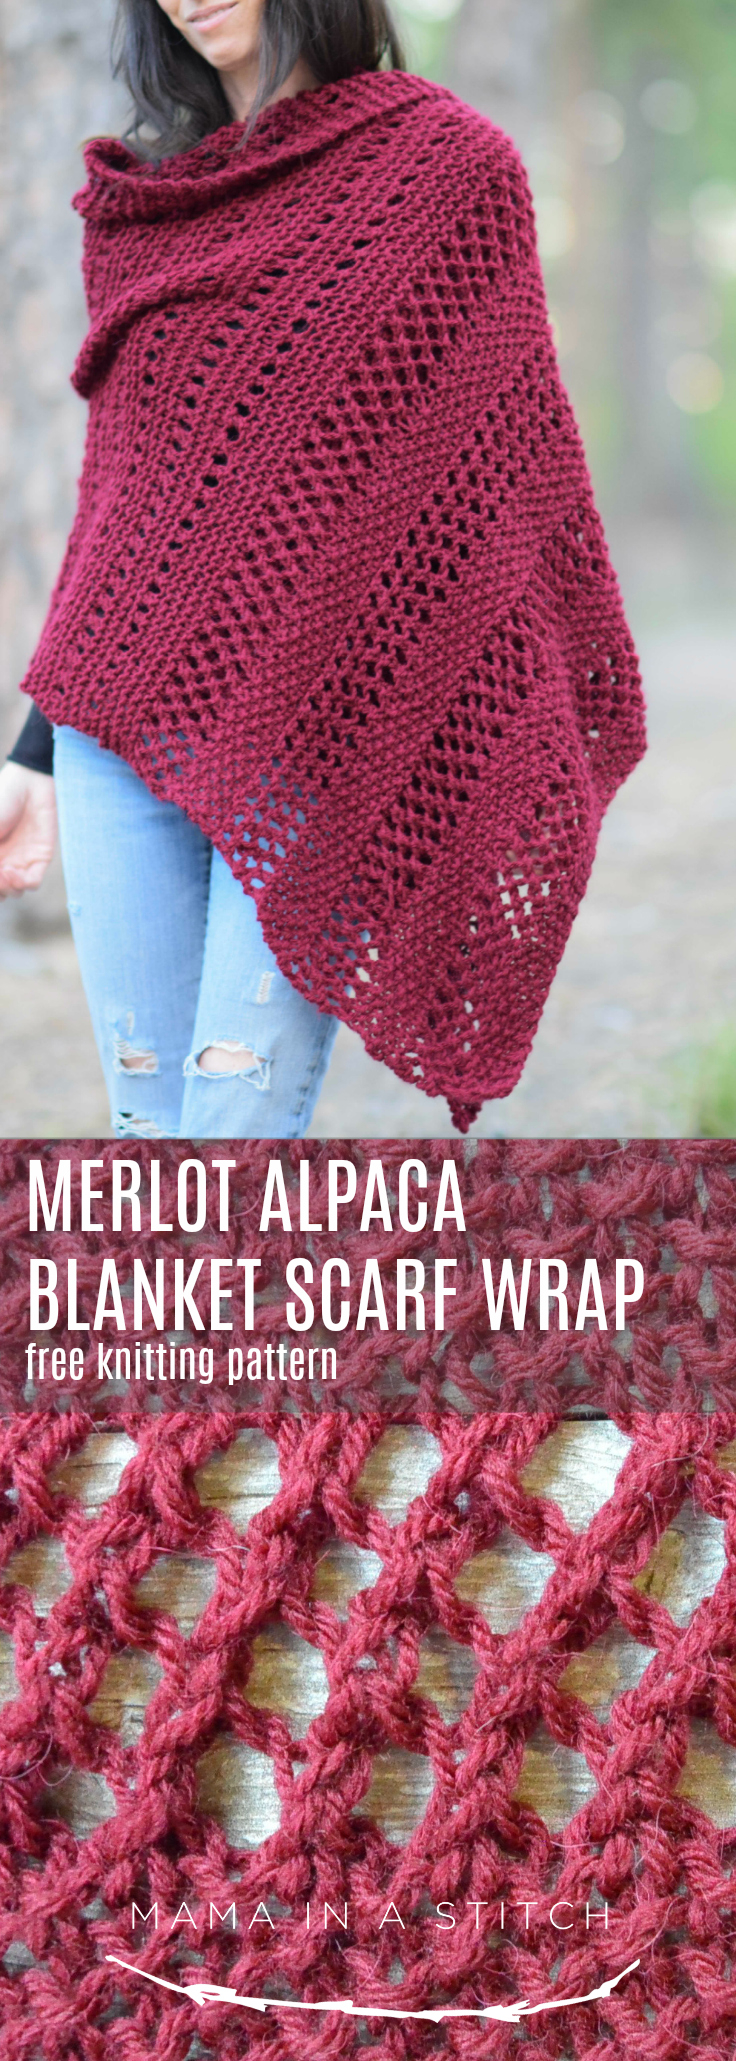 Knit Shawl Patterns Free Merlot Alpaca Wrap Shawl Knitting Pattern Mama In A Stitch